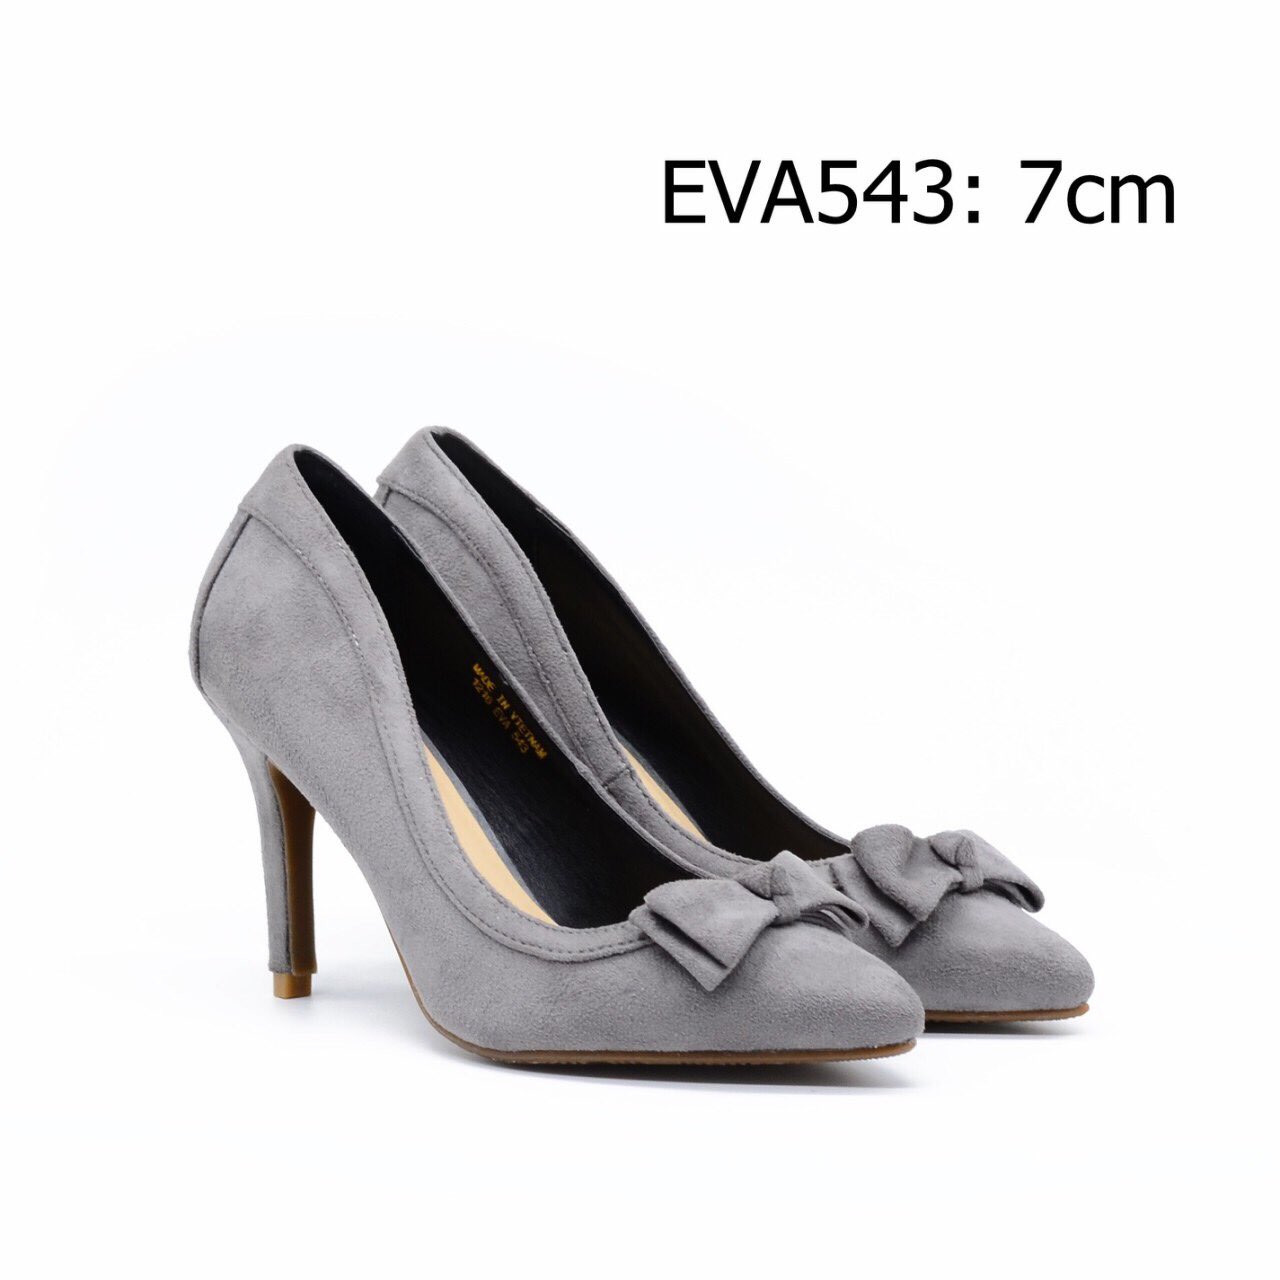 Giày bít mũi gót nhọn EVA543 cao 7cm thiết kế da lộn phối nơ xinh quyến rũ